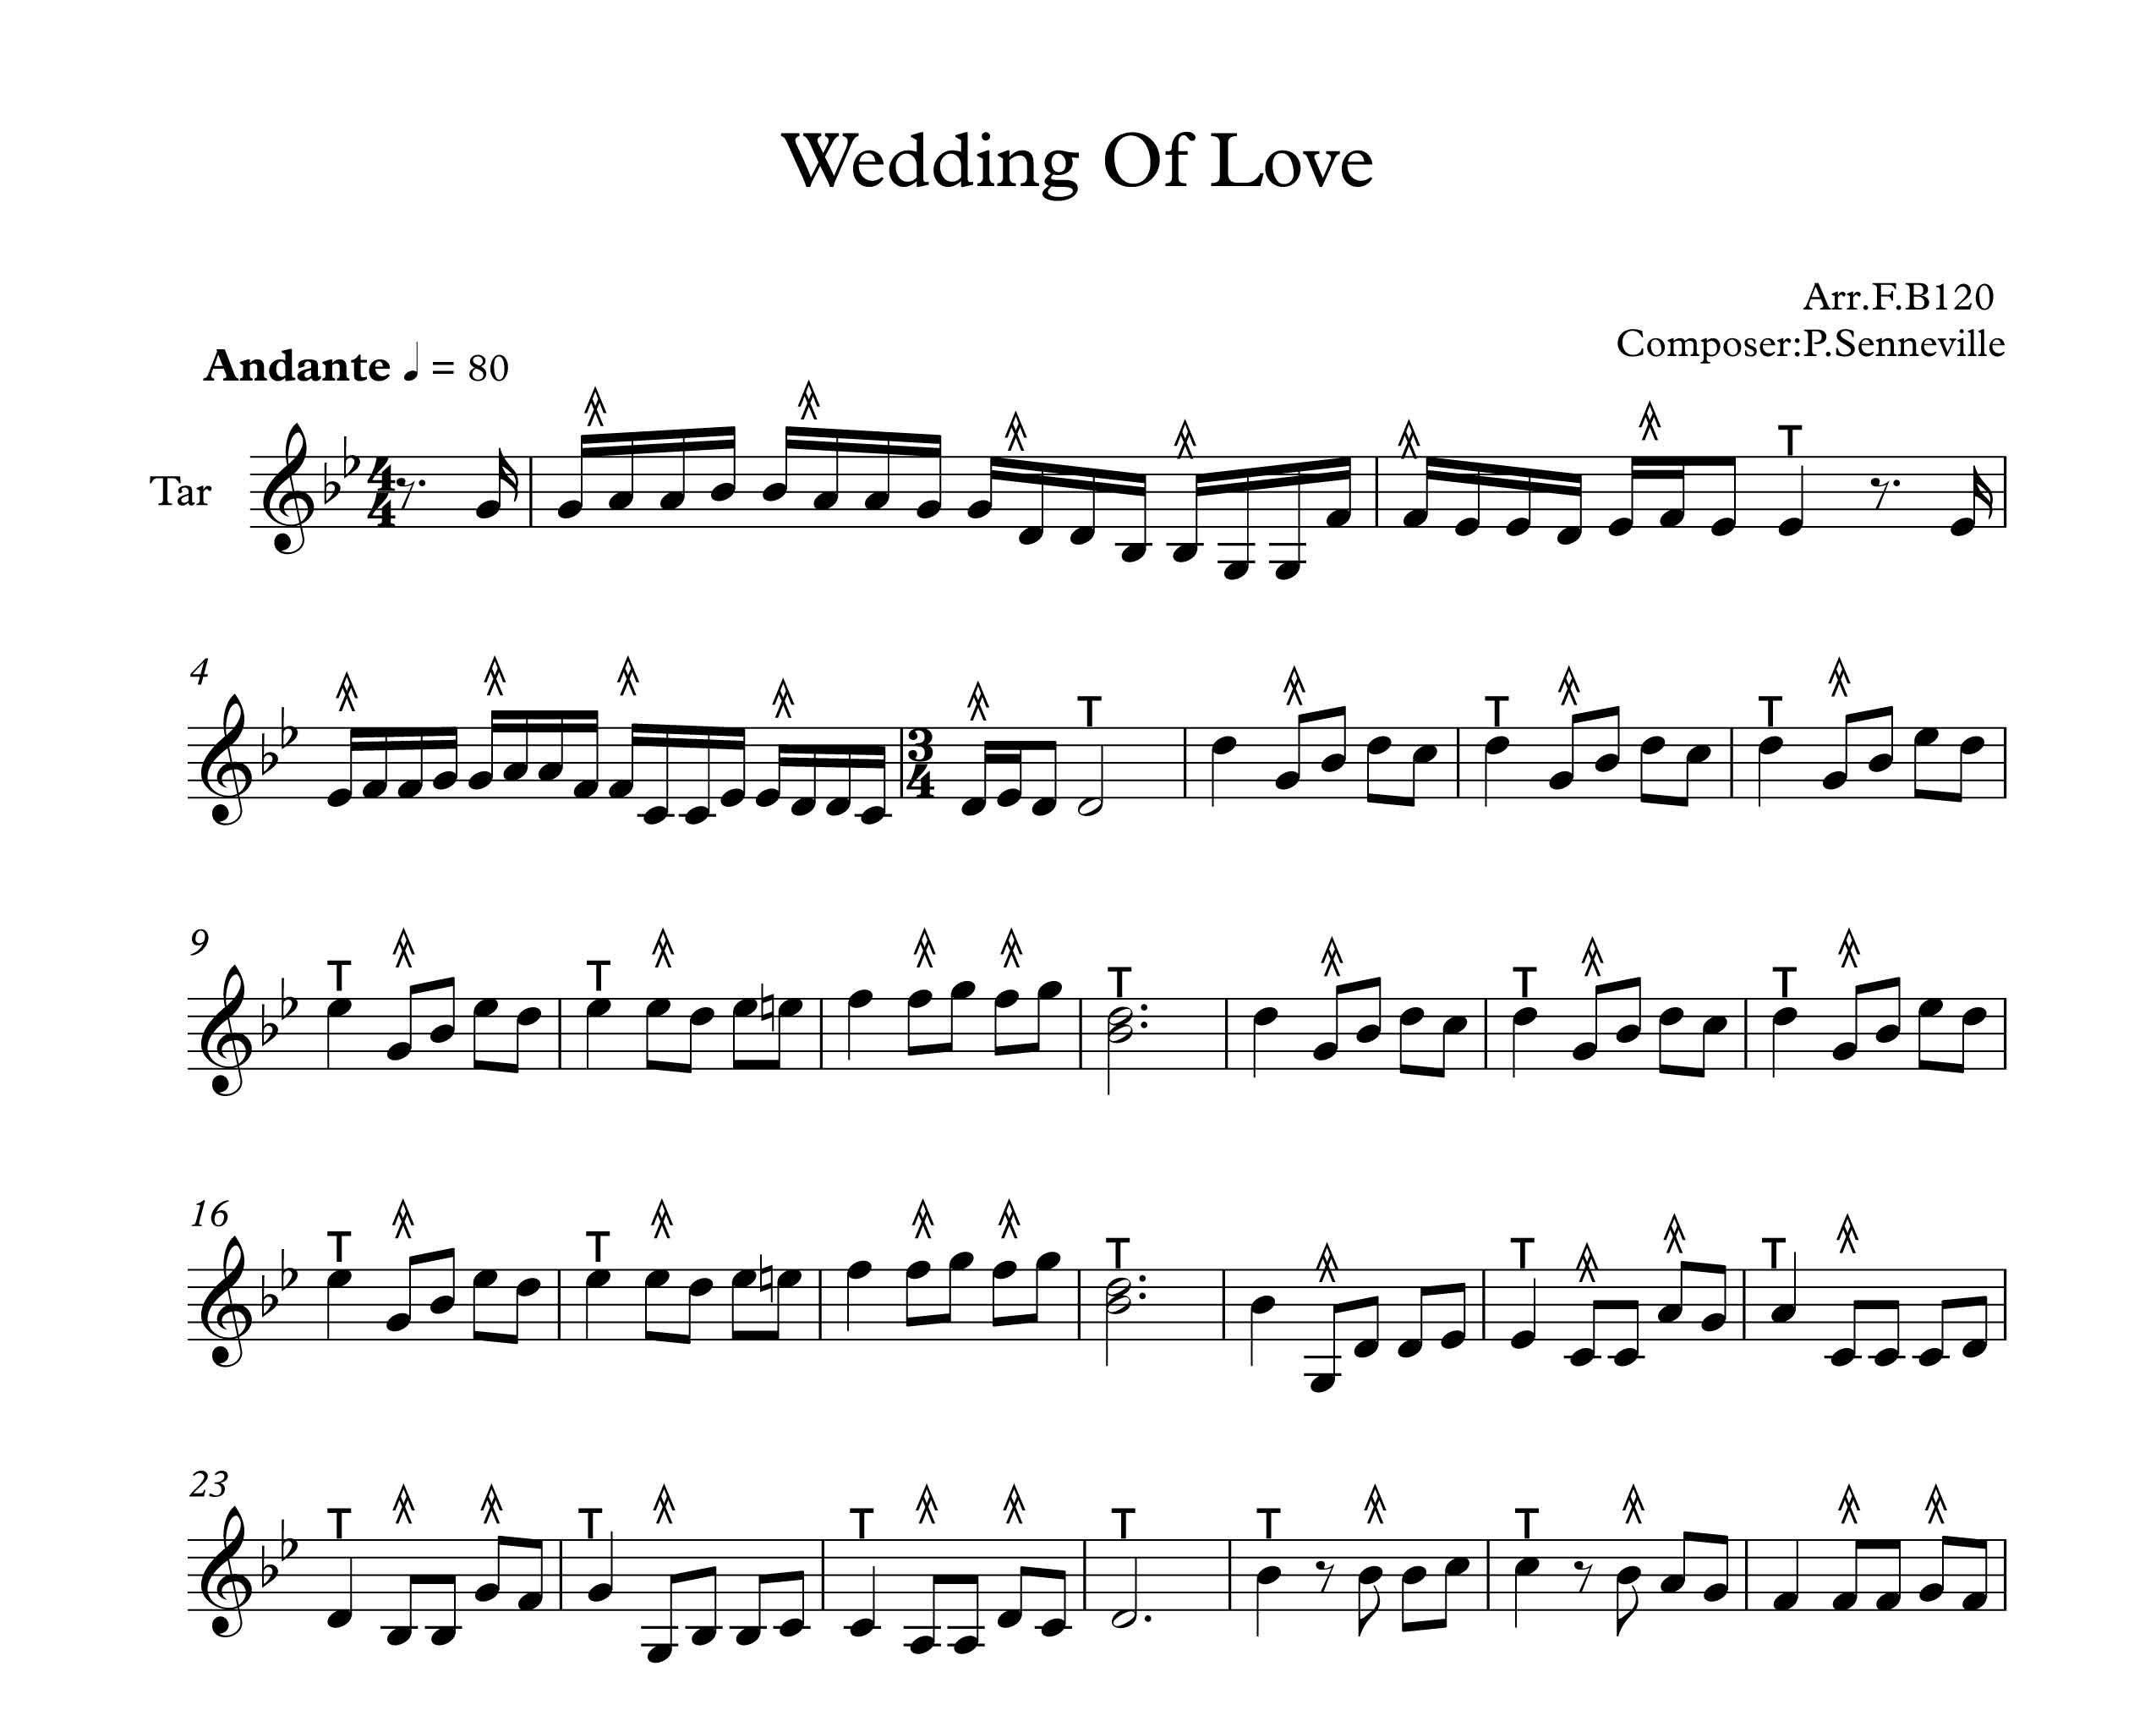 نت آهنگ عروسی عشق Wedding Of Love  برای تار